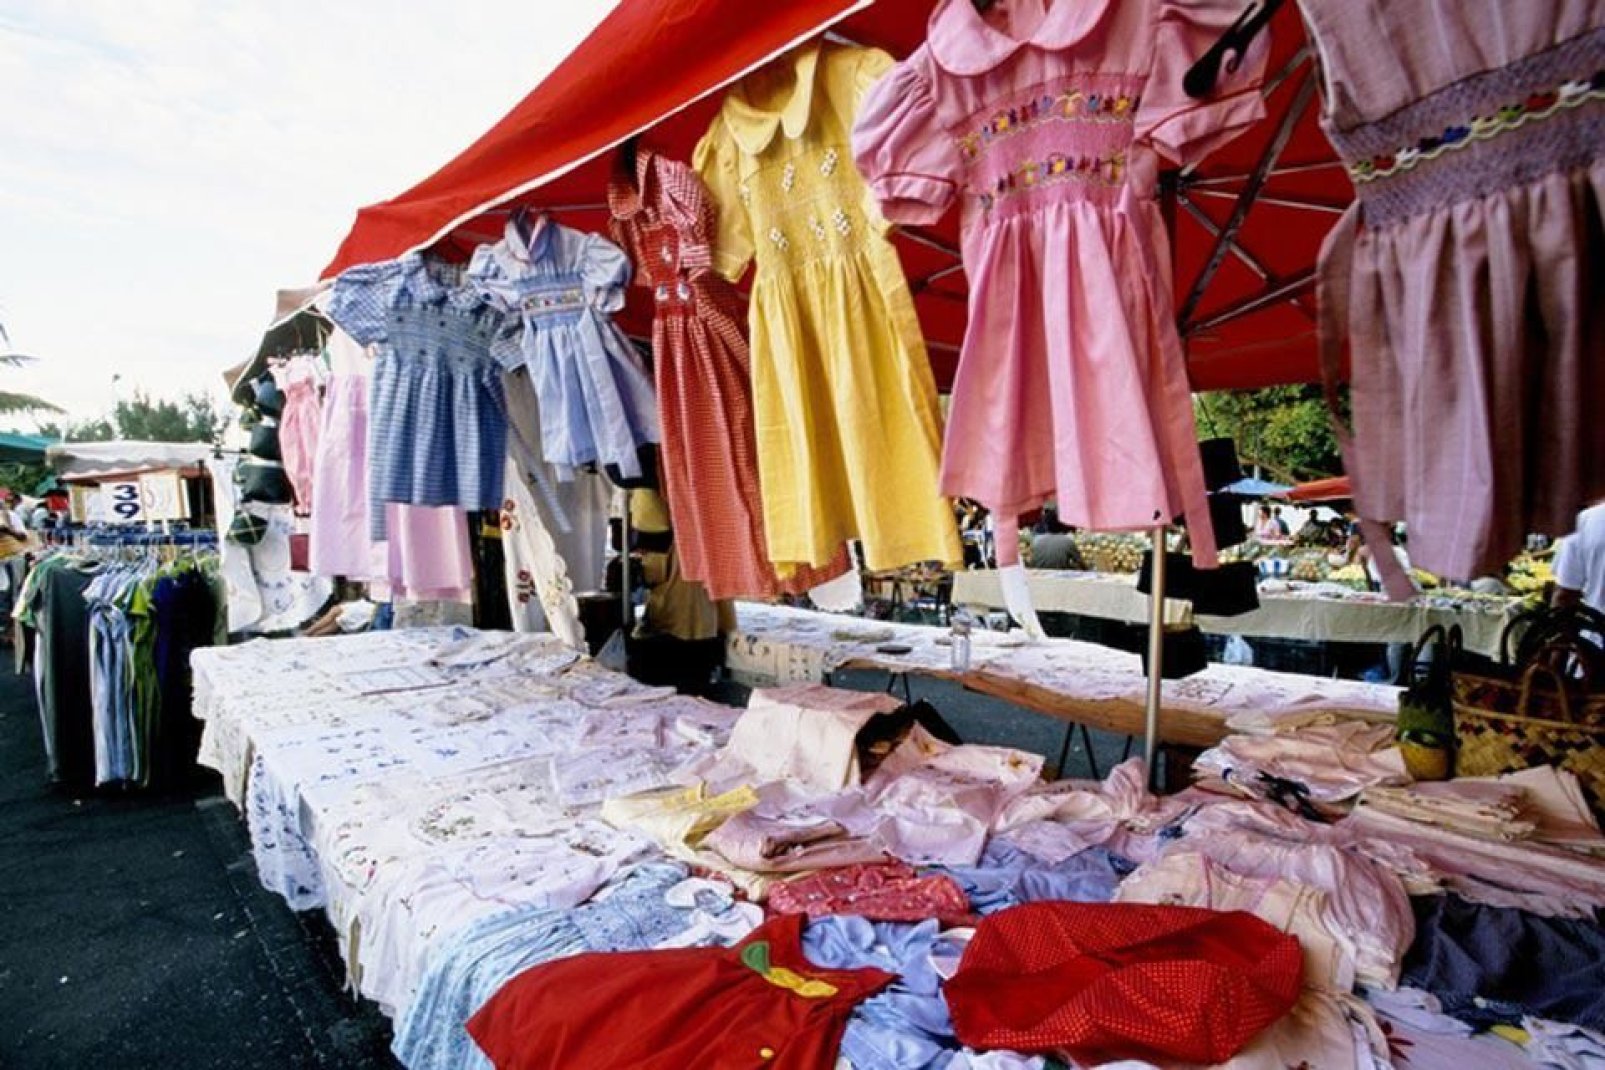 Son muchos los productos procedentes de Madagascar, como estos vestidos, que se venden a buen precio.